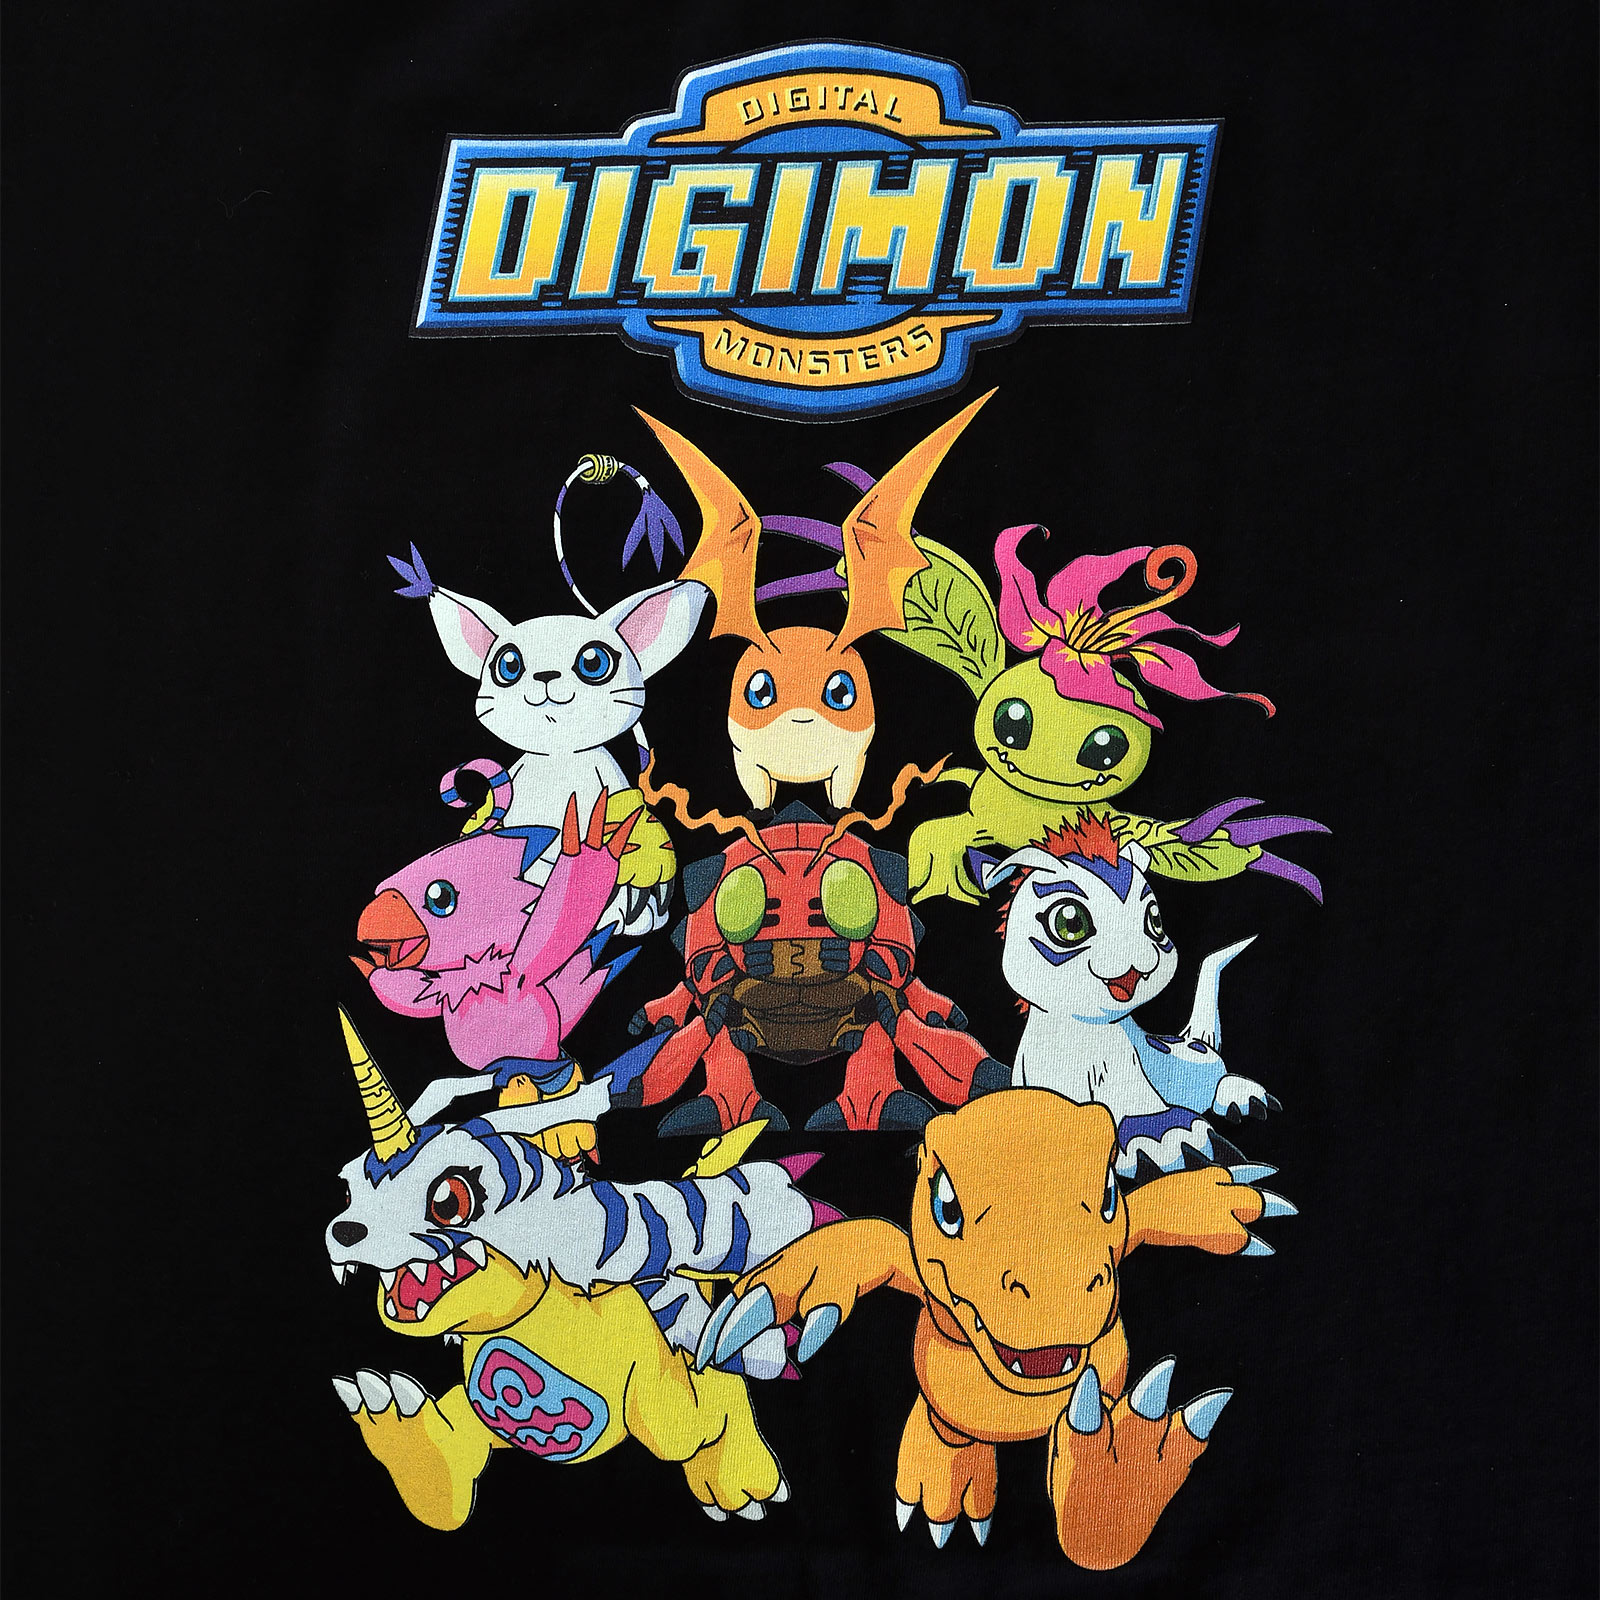 Digimon - Characters T-Shirt Damen schwarz